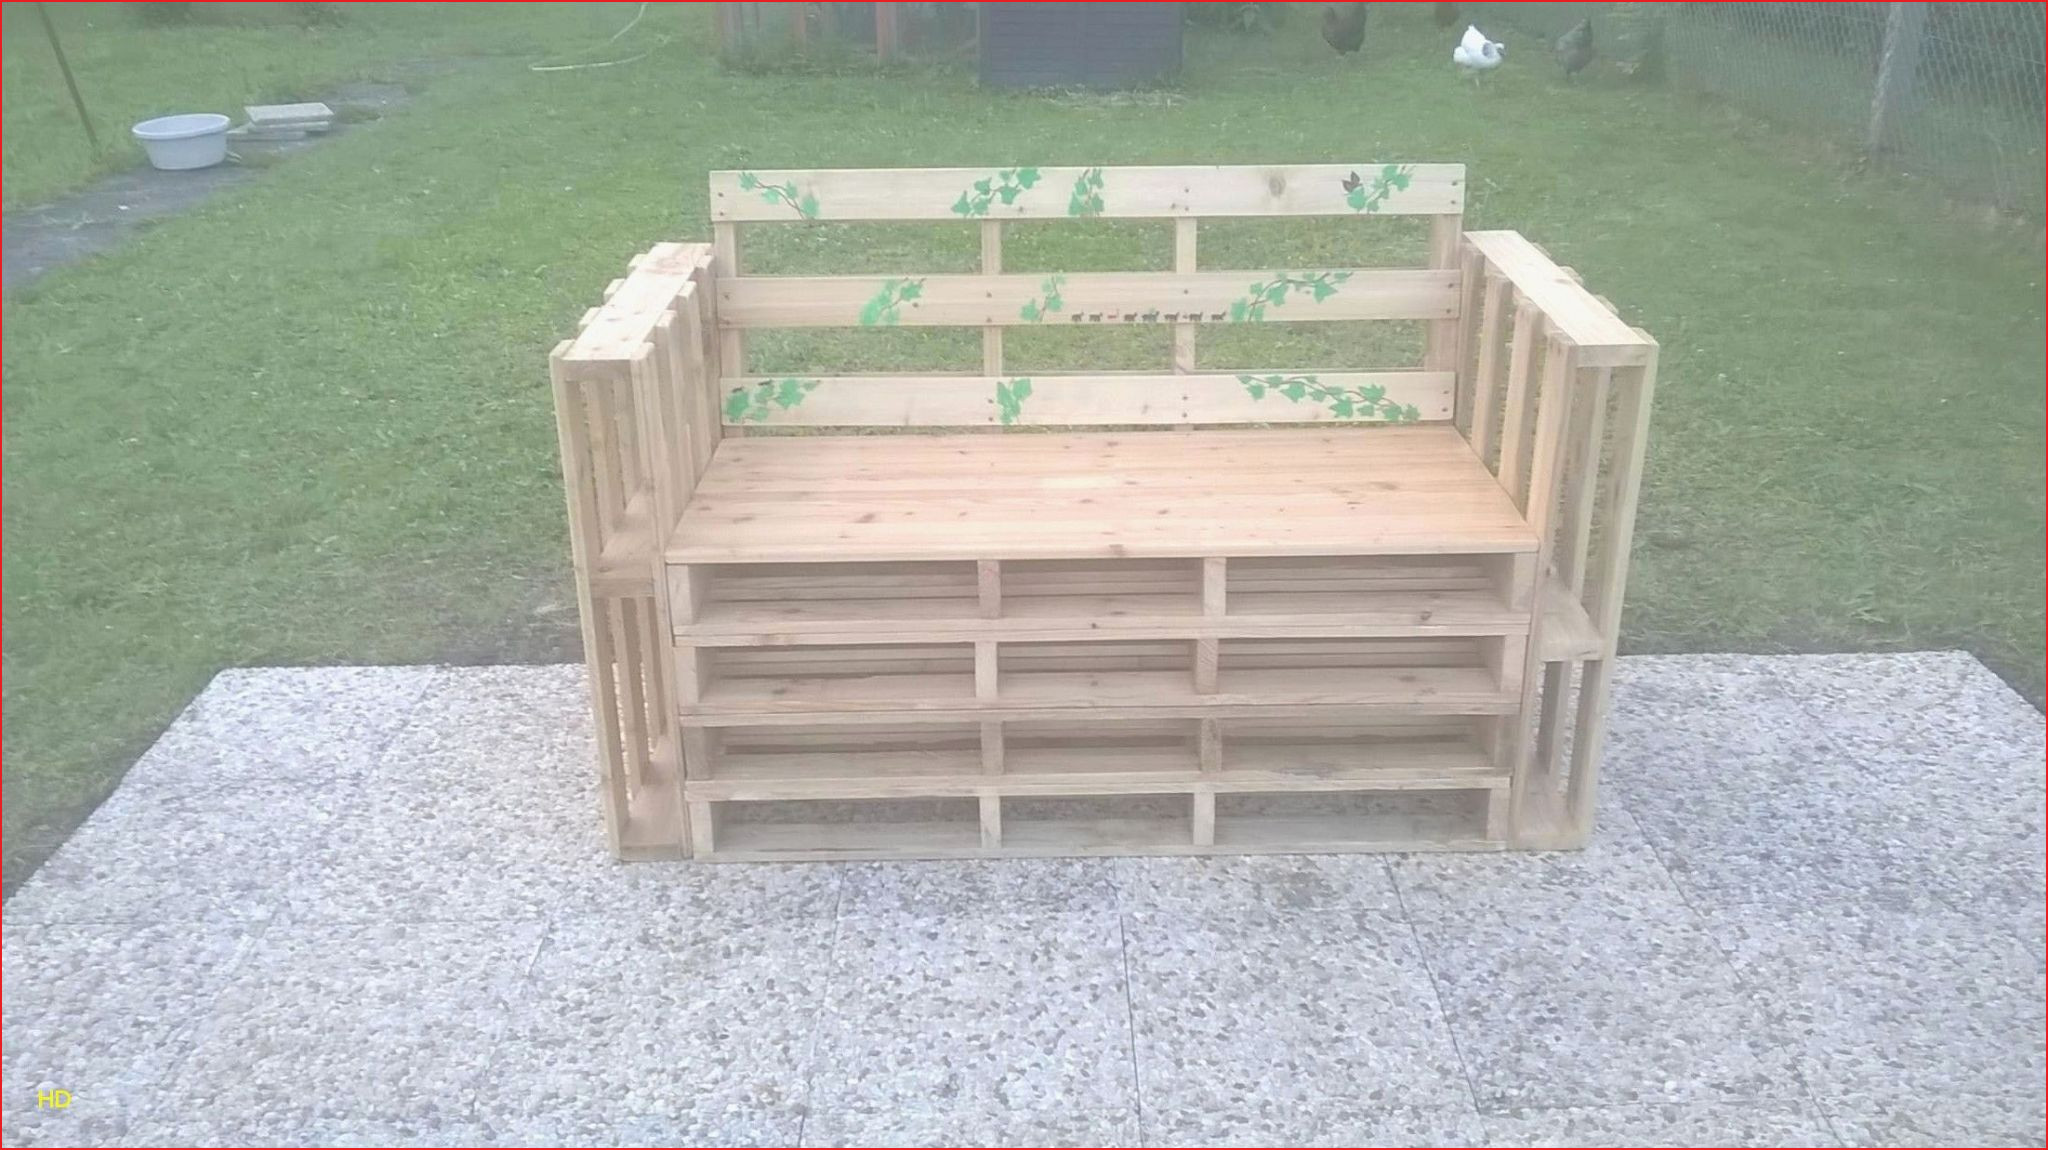 table de jardin avec banc unique innovante banc pour jardin image de jardin decoratif de table de jardin avec banc